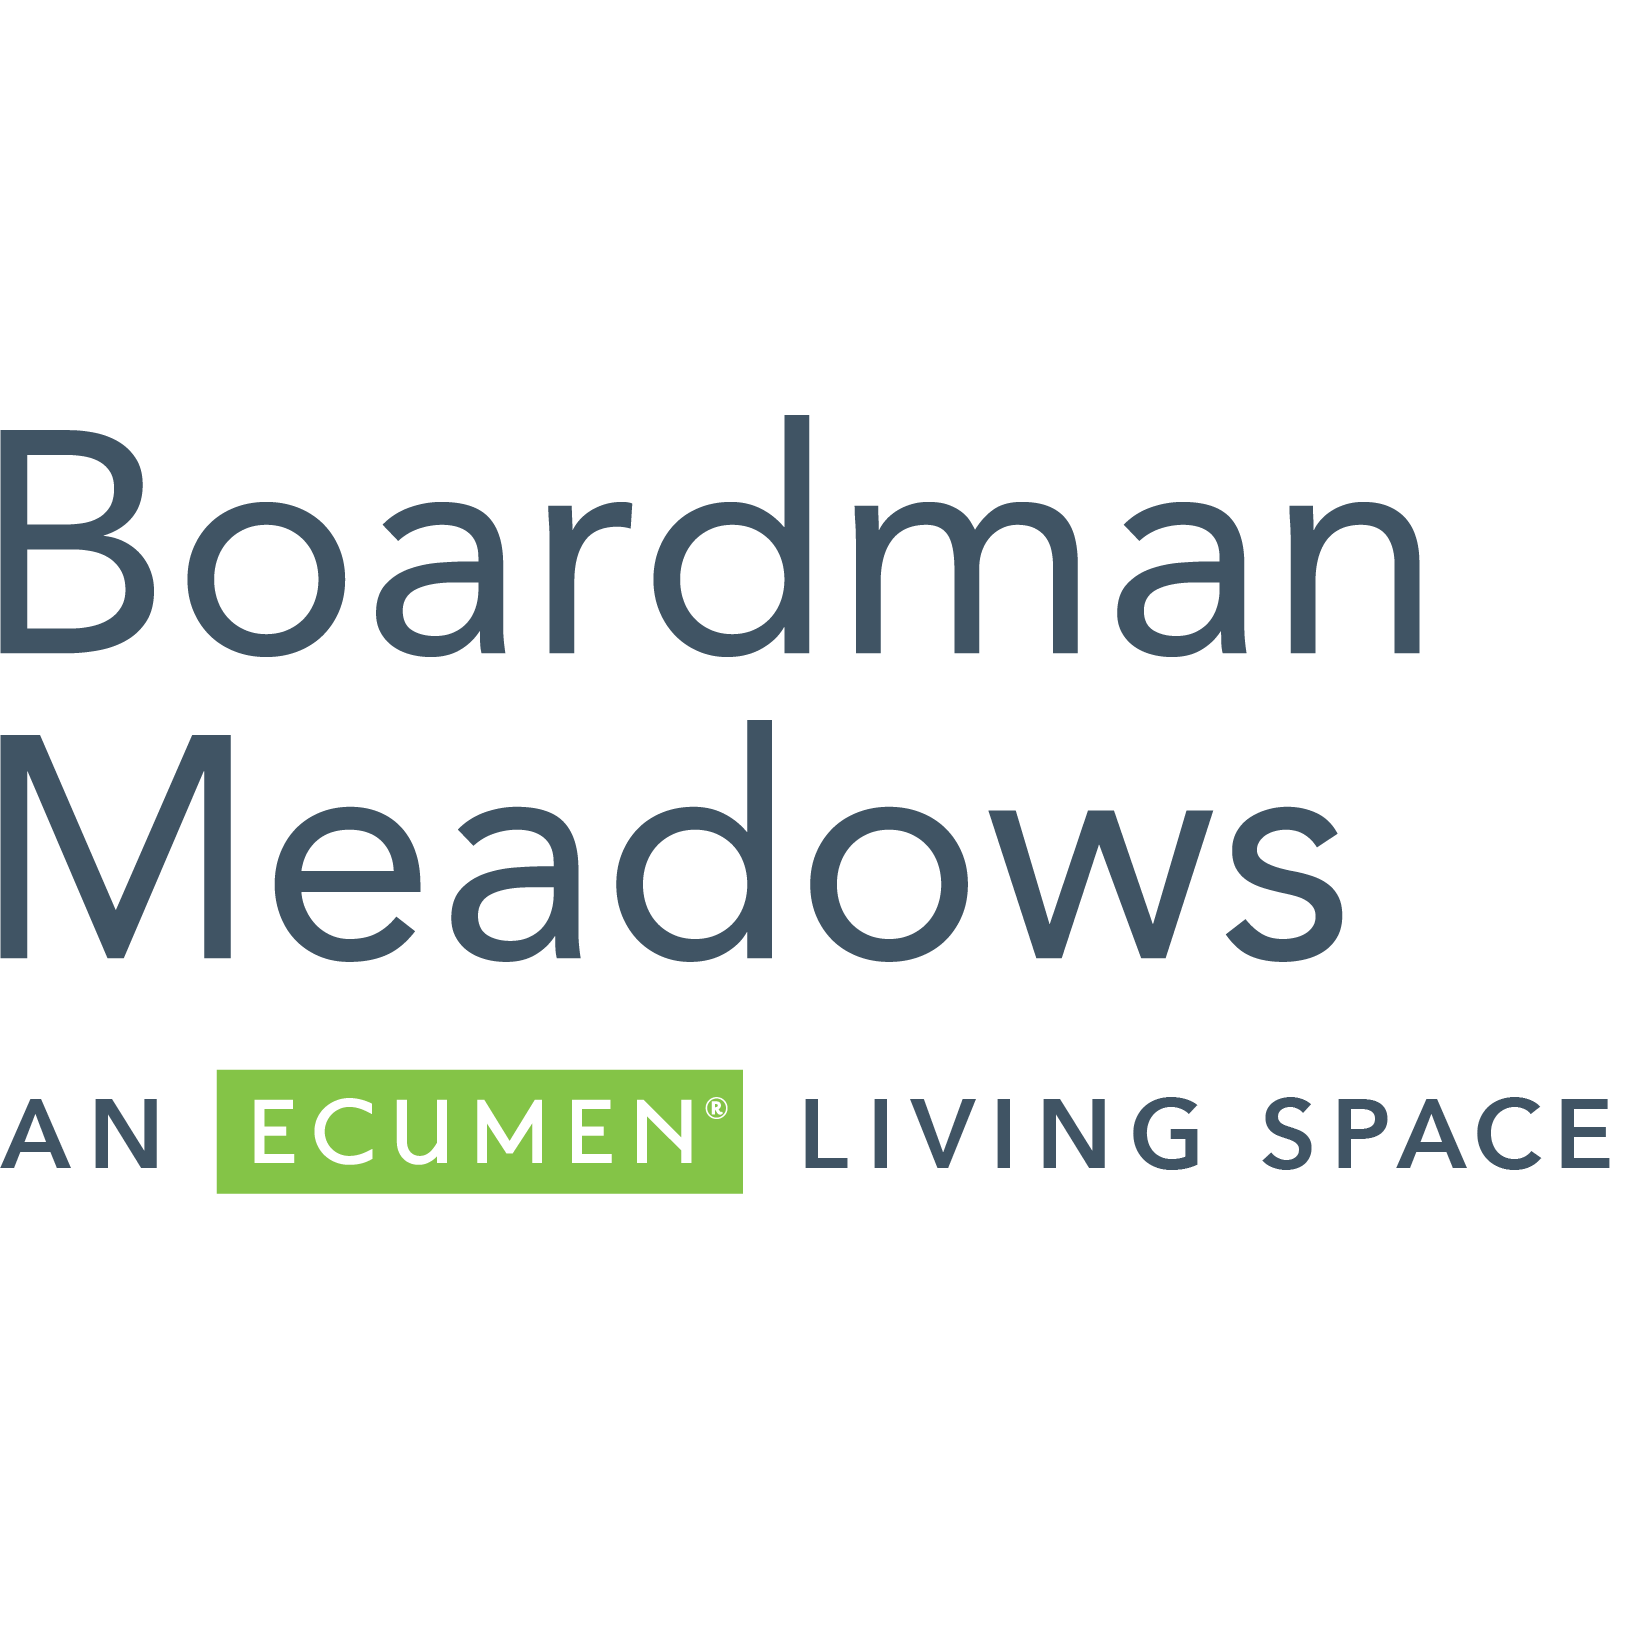 Boardman Meadows | An Ecumen Living Space